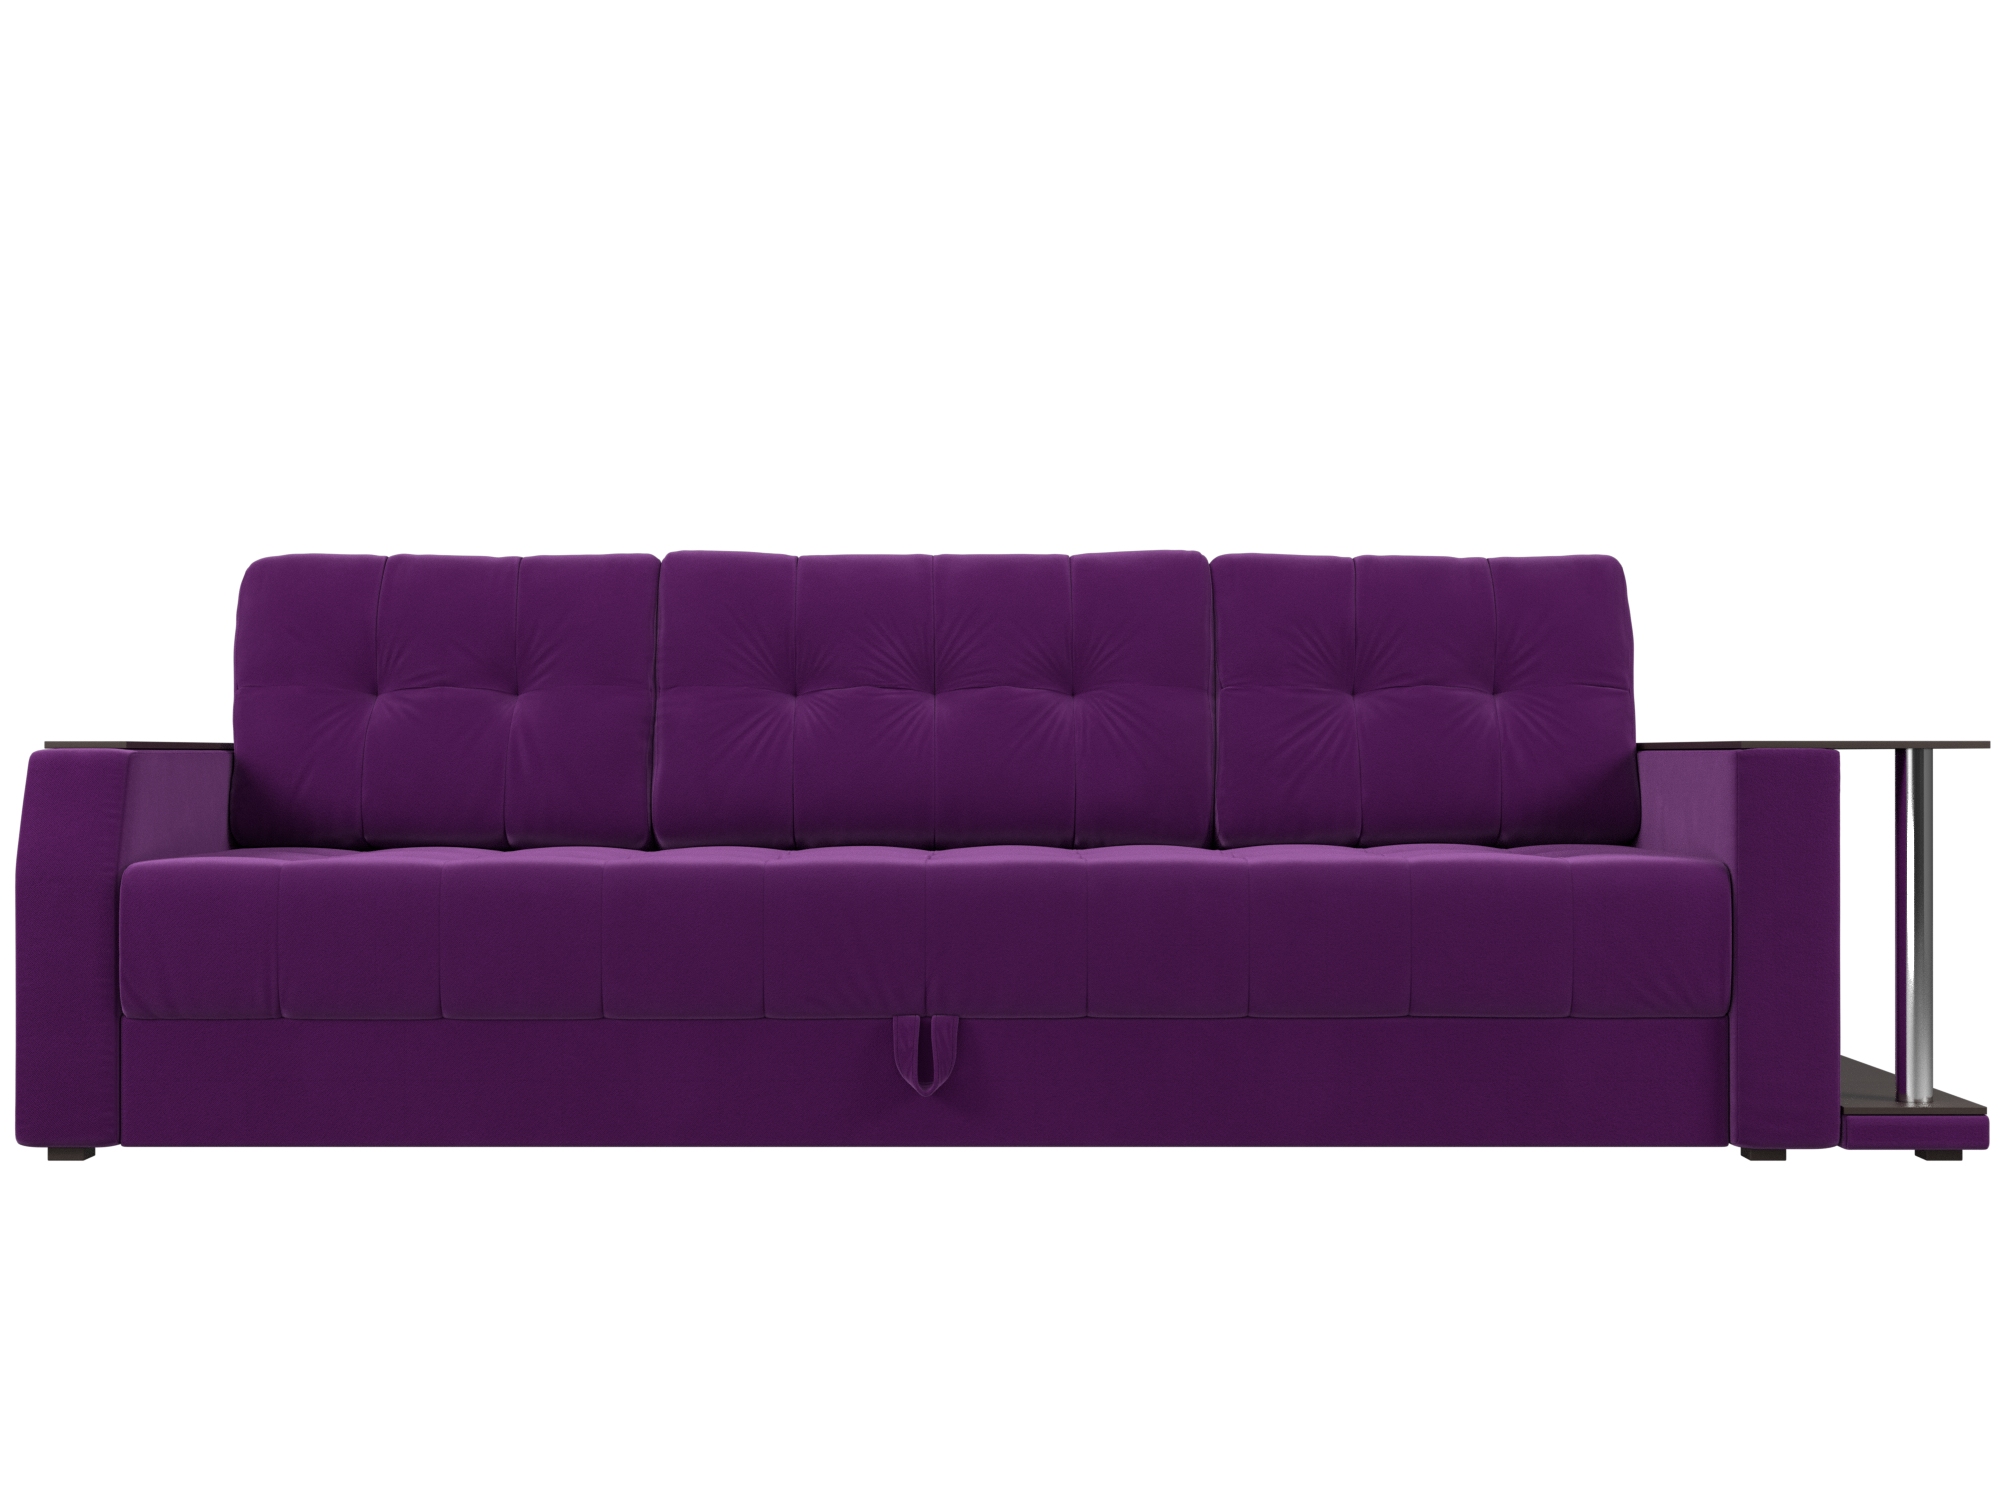 Диван-еврокнижка Атлант Правый MebelVia Фиолетовый, Микровельвет, ЛДСП диван еврокнижка мебелико атлант т микровельвет фиолетовый